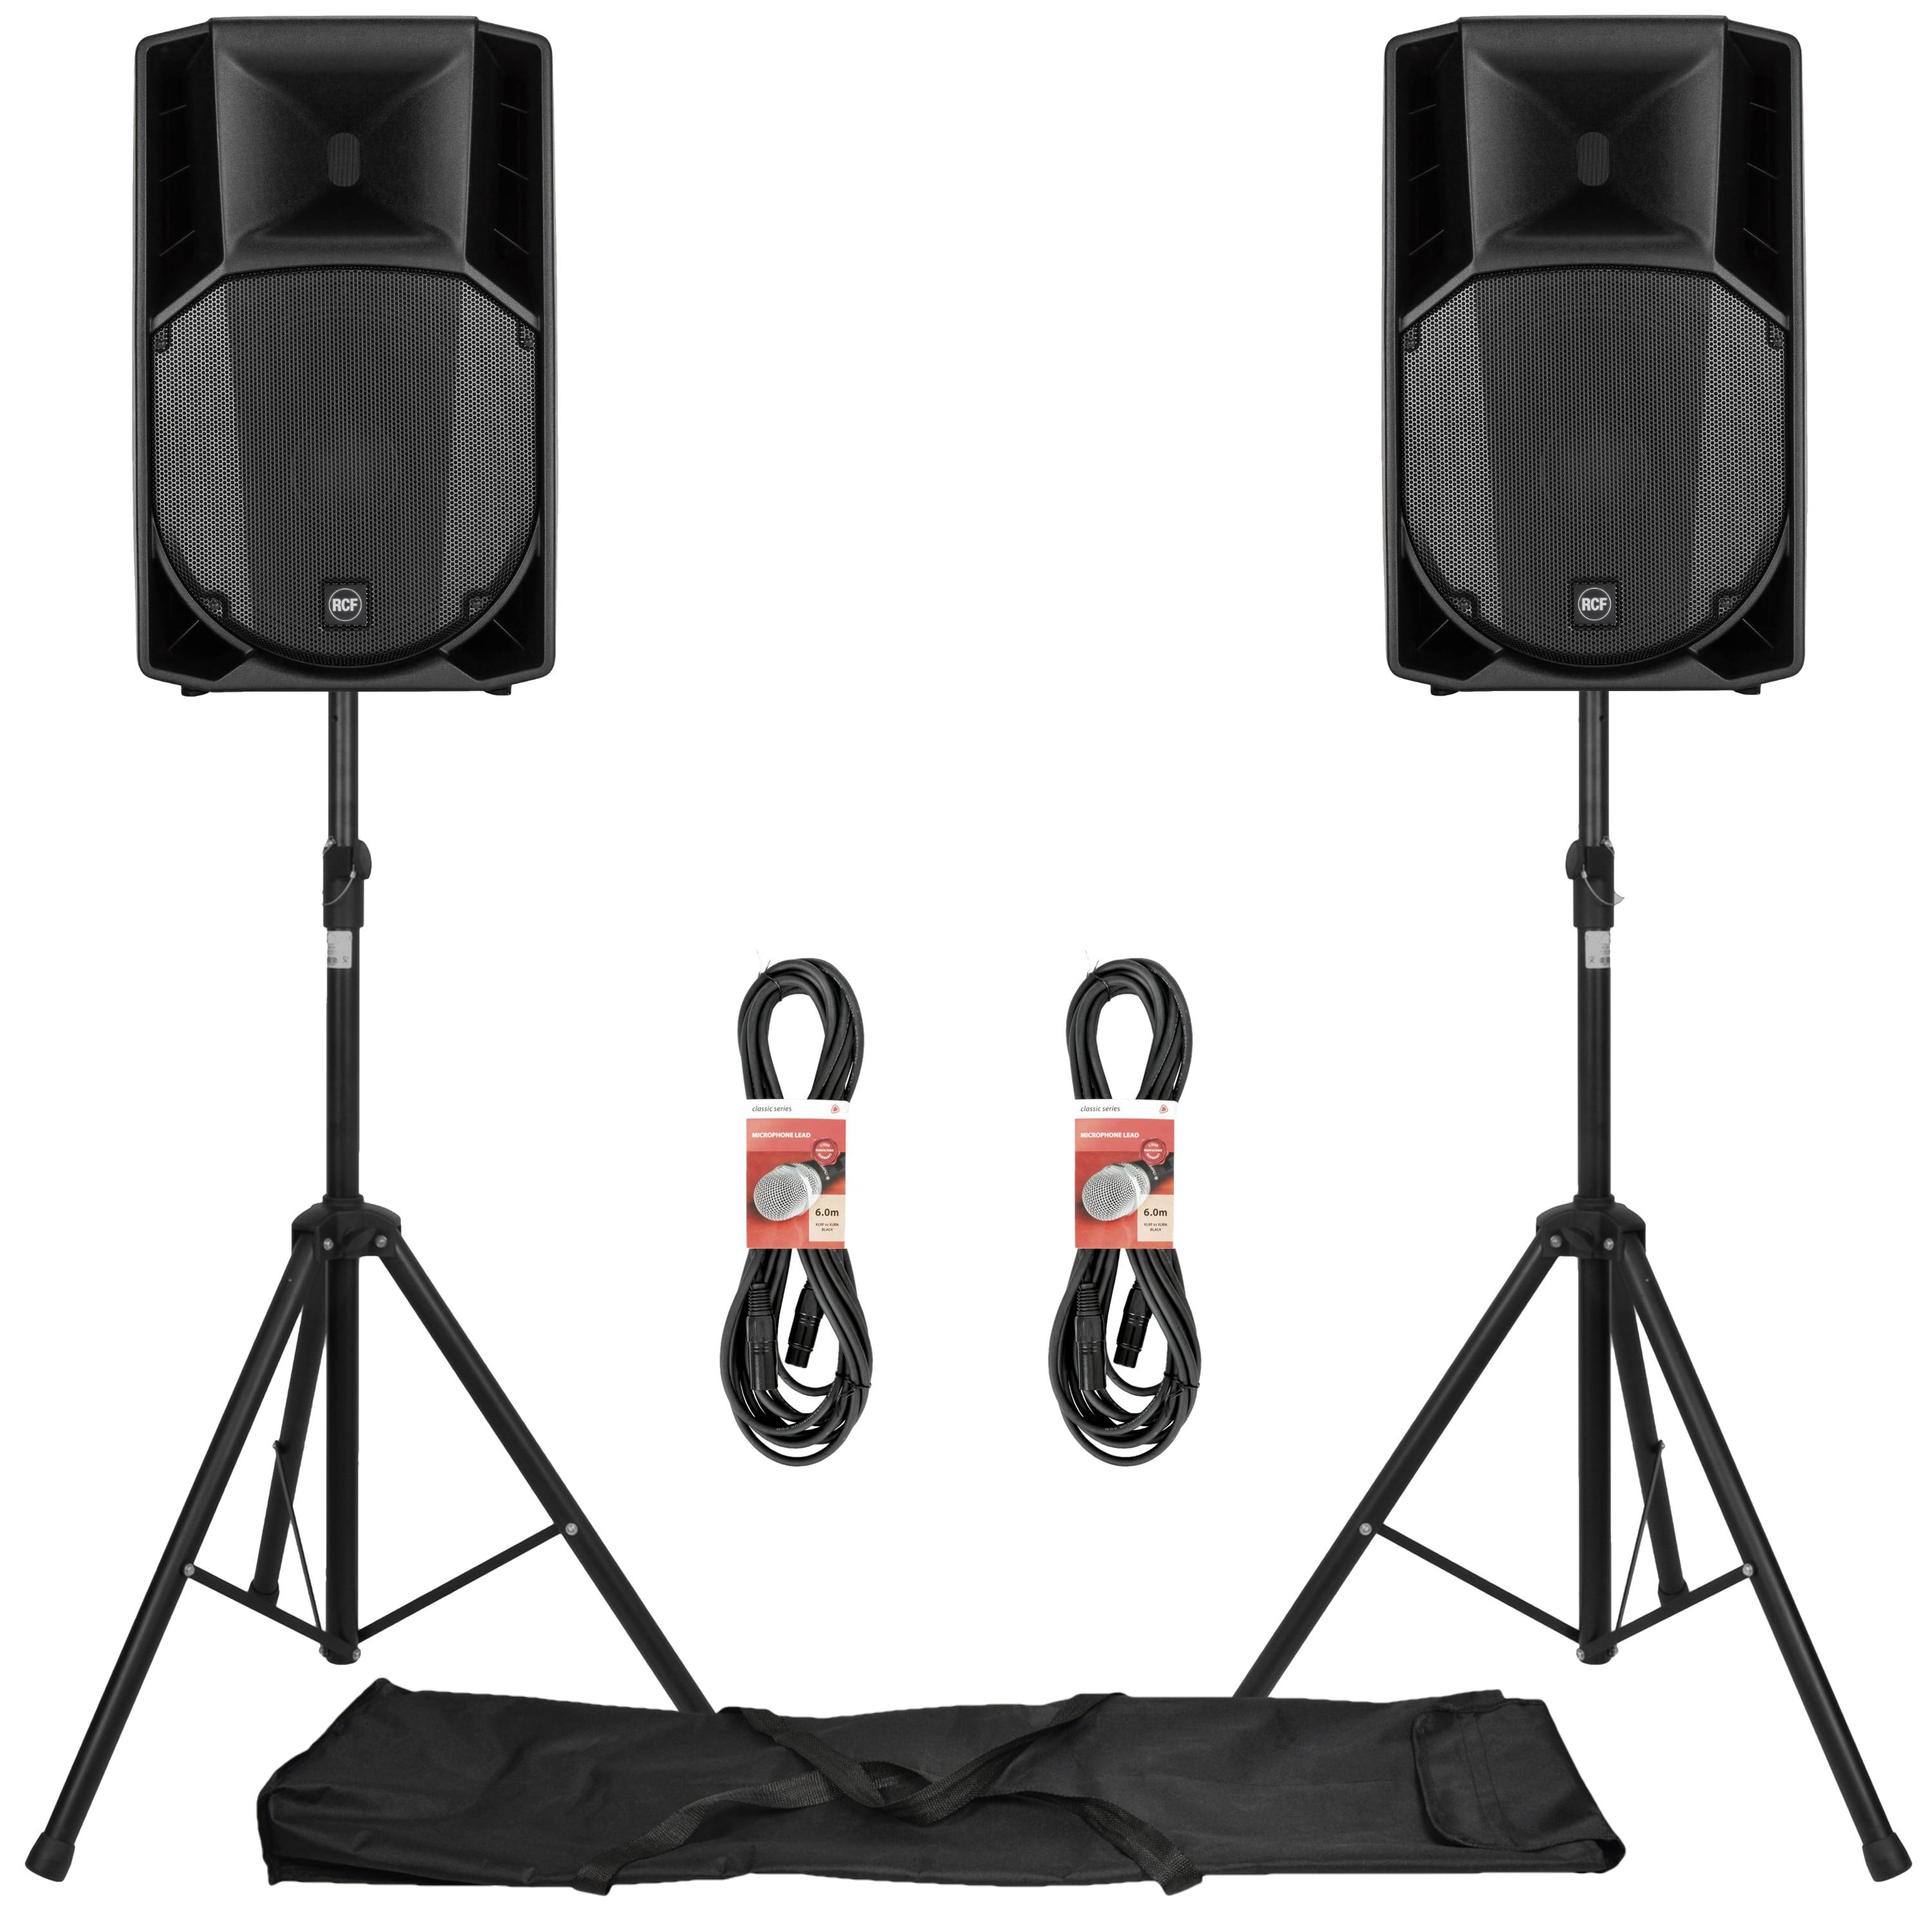 ART 715-A MK4 Active Speaker System